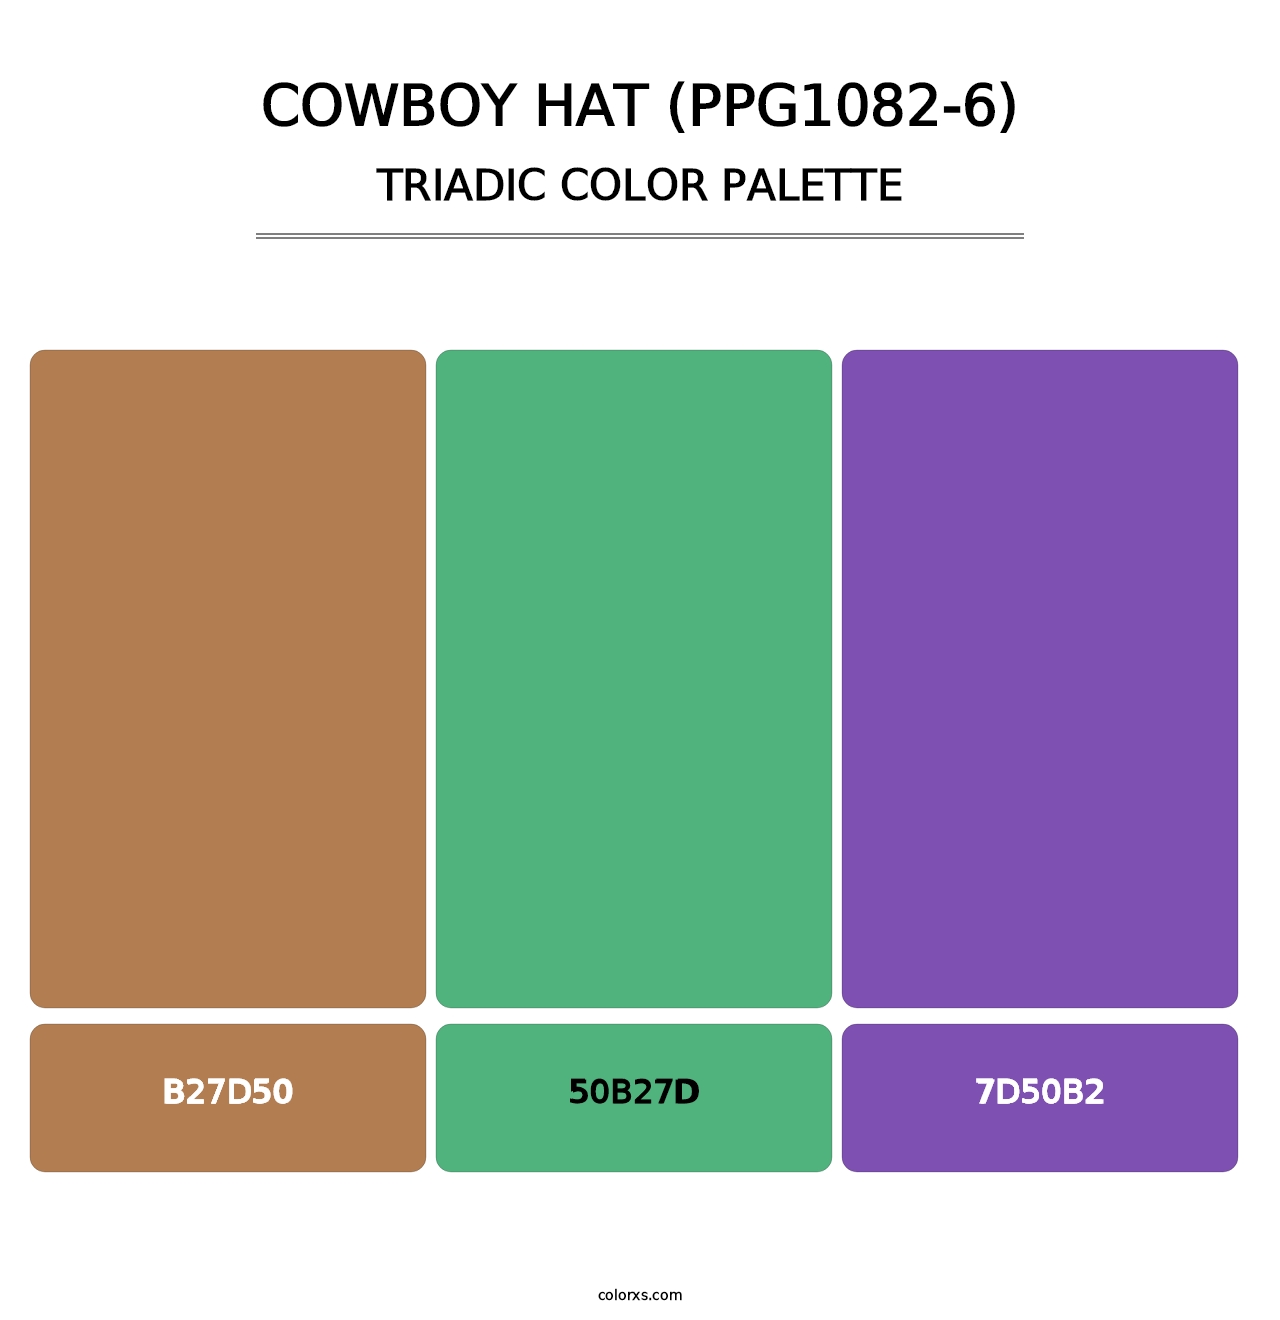 Cowboy Hat (PPG1082-6) - Triadic Color Palette